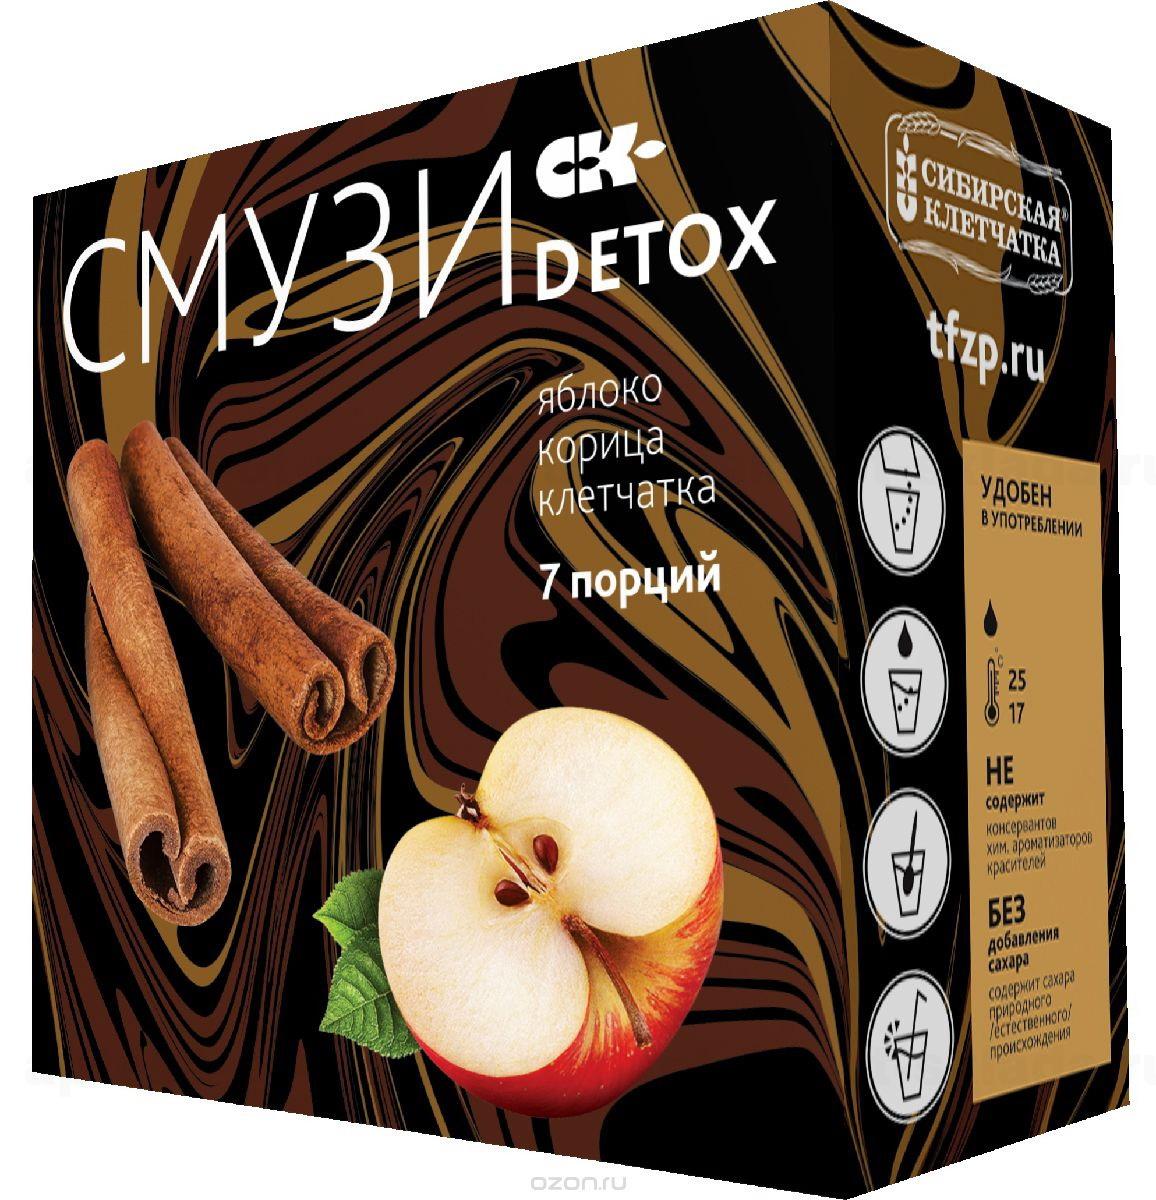 Смузи detox спорт яблоко/корица/клетчатка 12г пакет N 7